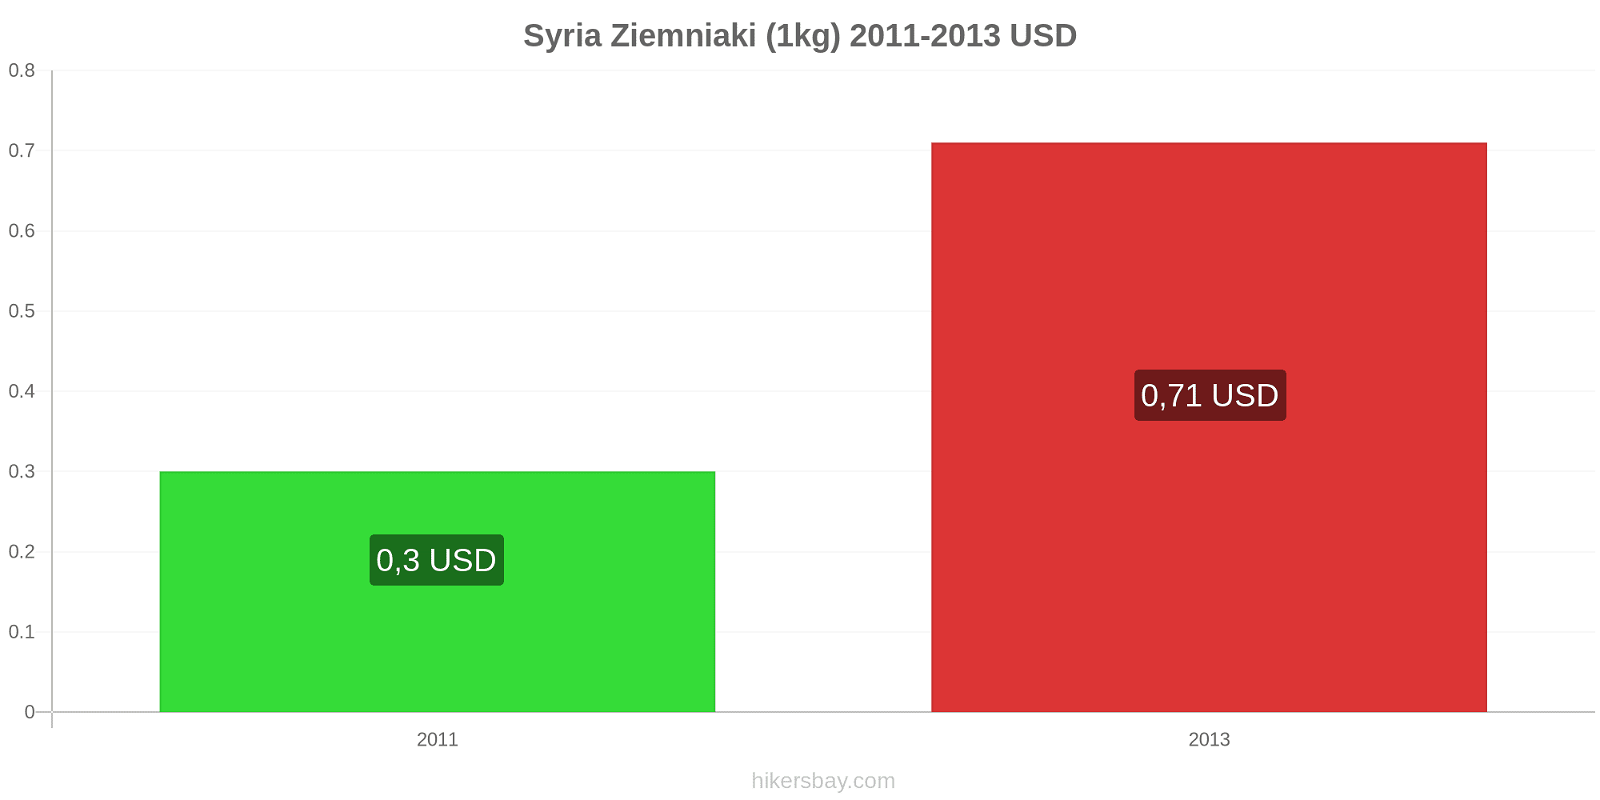 Syria zmiany cen Ziemniaki (1kg) hikersbay.com